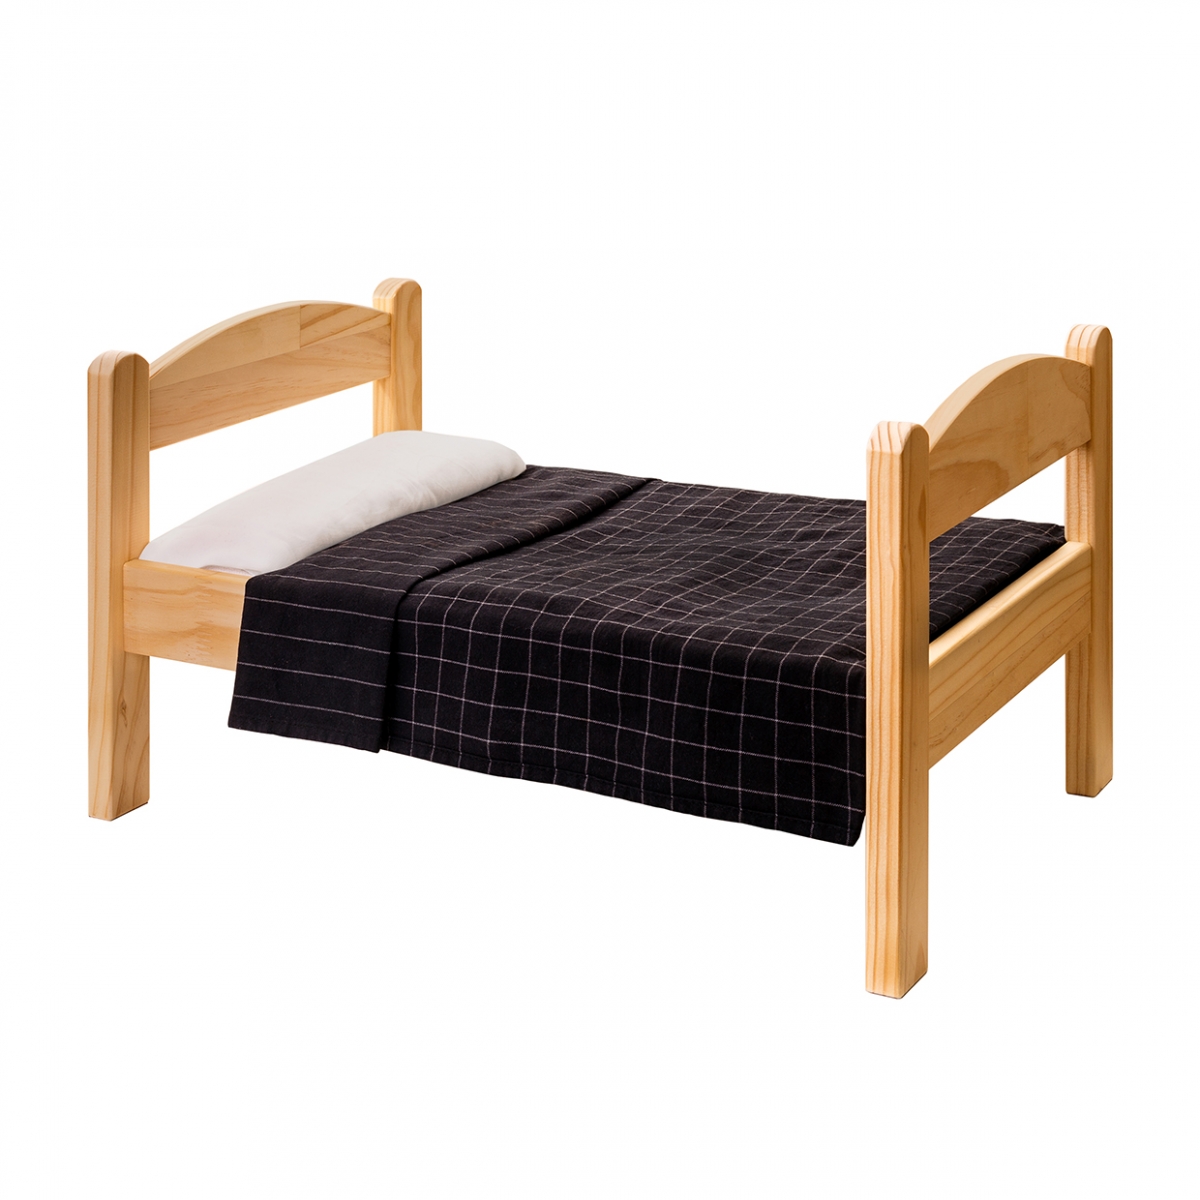 Imagen en la que se ve una cama de madera individual